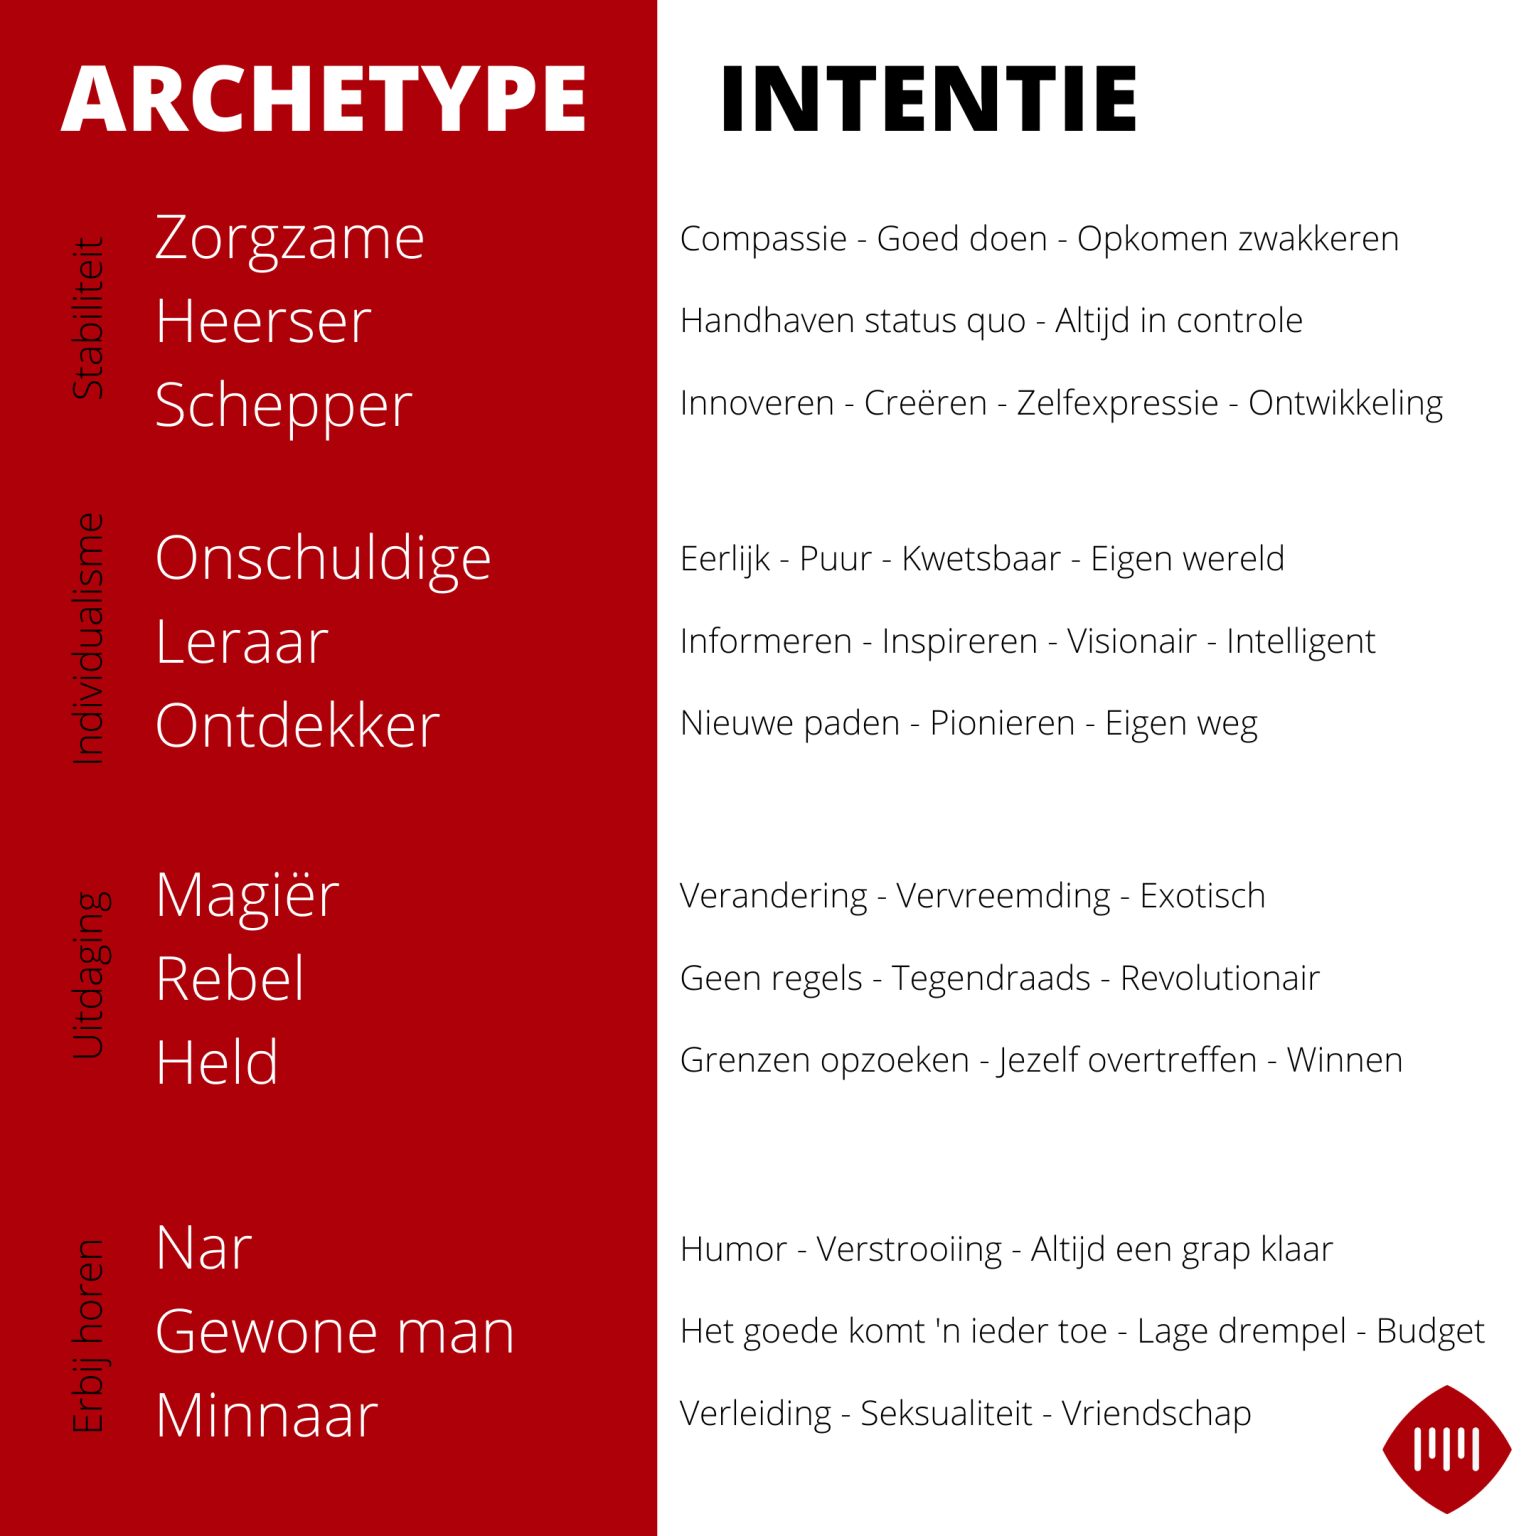 Archetypes-voor-merken-en-bijbehorende-intenties-Marketingbureau-Motionmill-Antwerpen-1536x1536